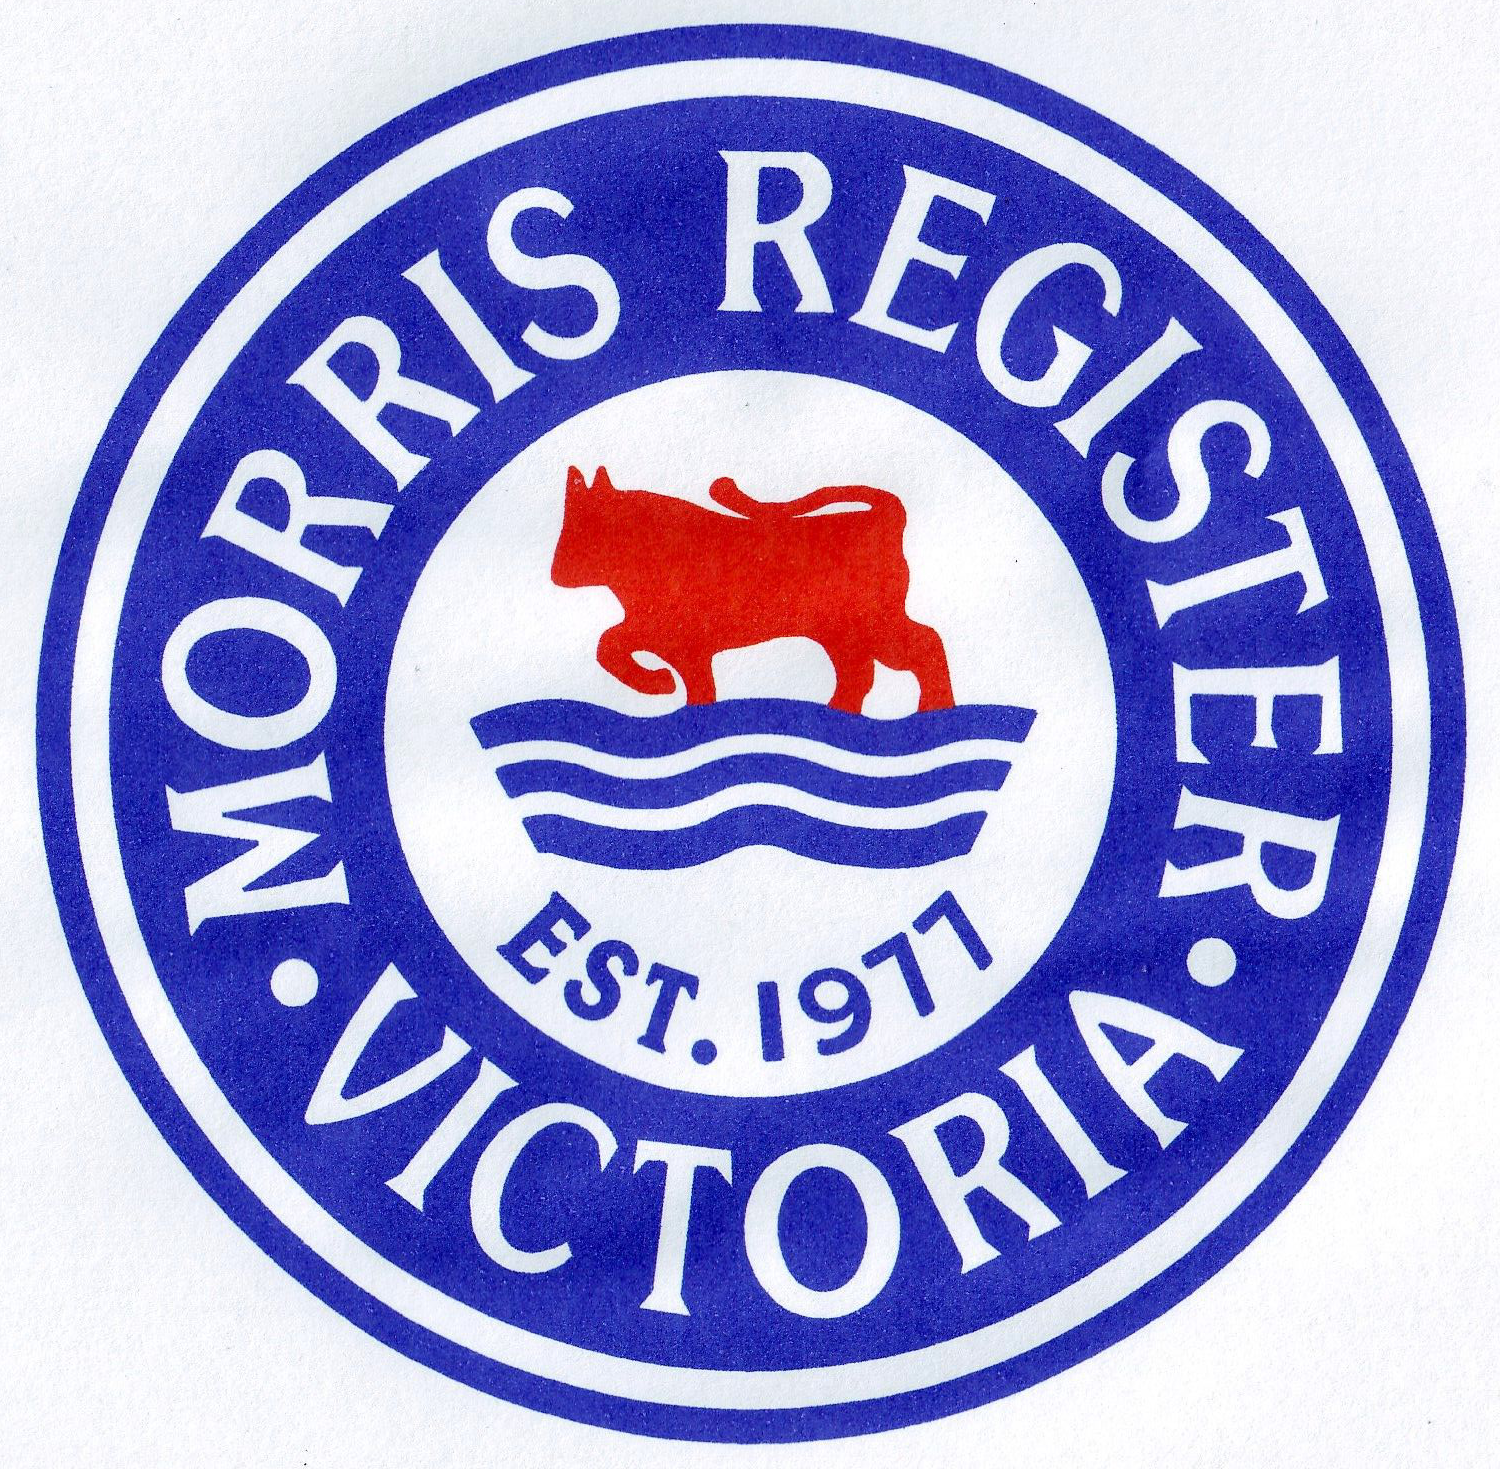 Morris Register Victoria